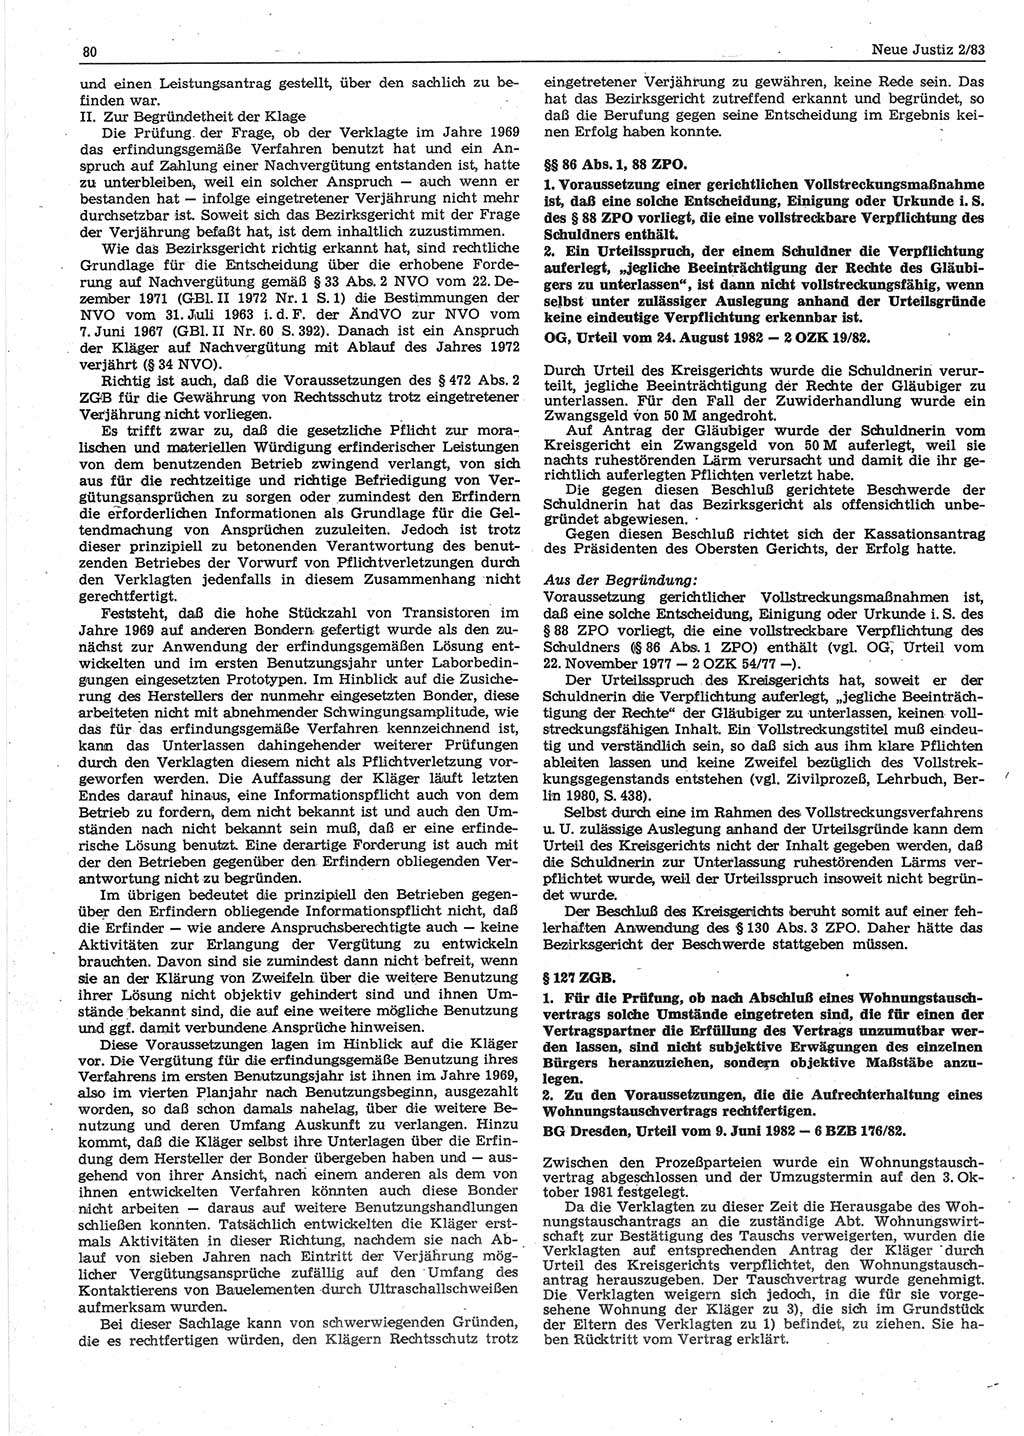 Neue Justiz (NJ), Zeitschrift für sozialistisches Recht und Gesetzlichkeit [Deutsche Demokratische Republik (DDR)], 37. Jahrgang 1983, Seite 80 (NJ DDR 1983, S. 80)